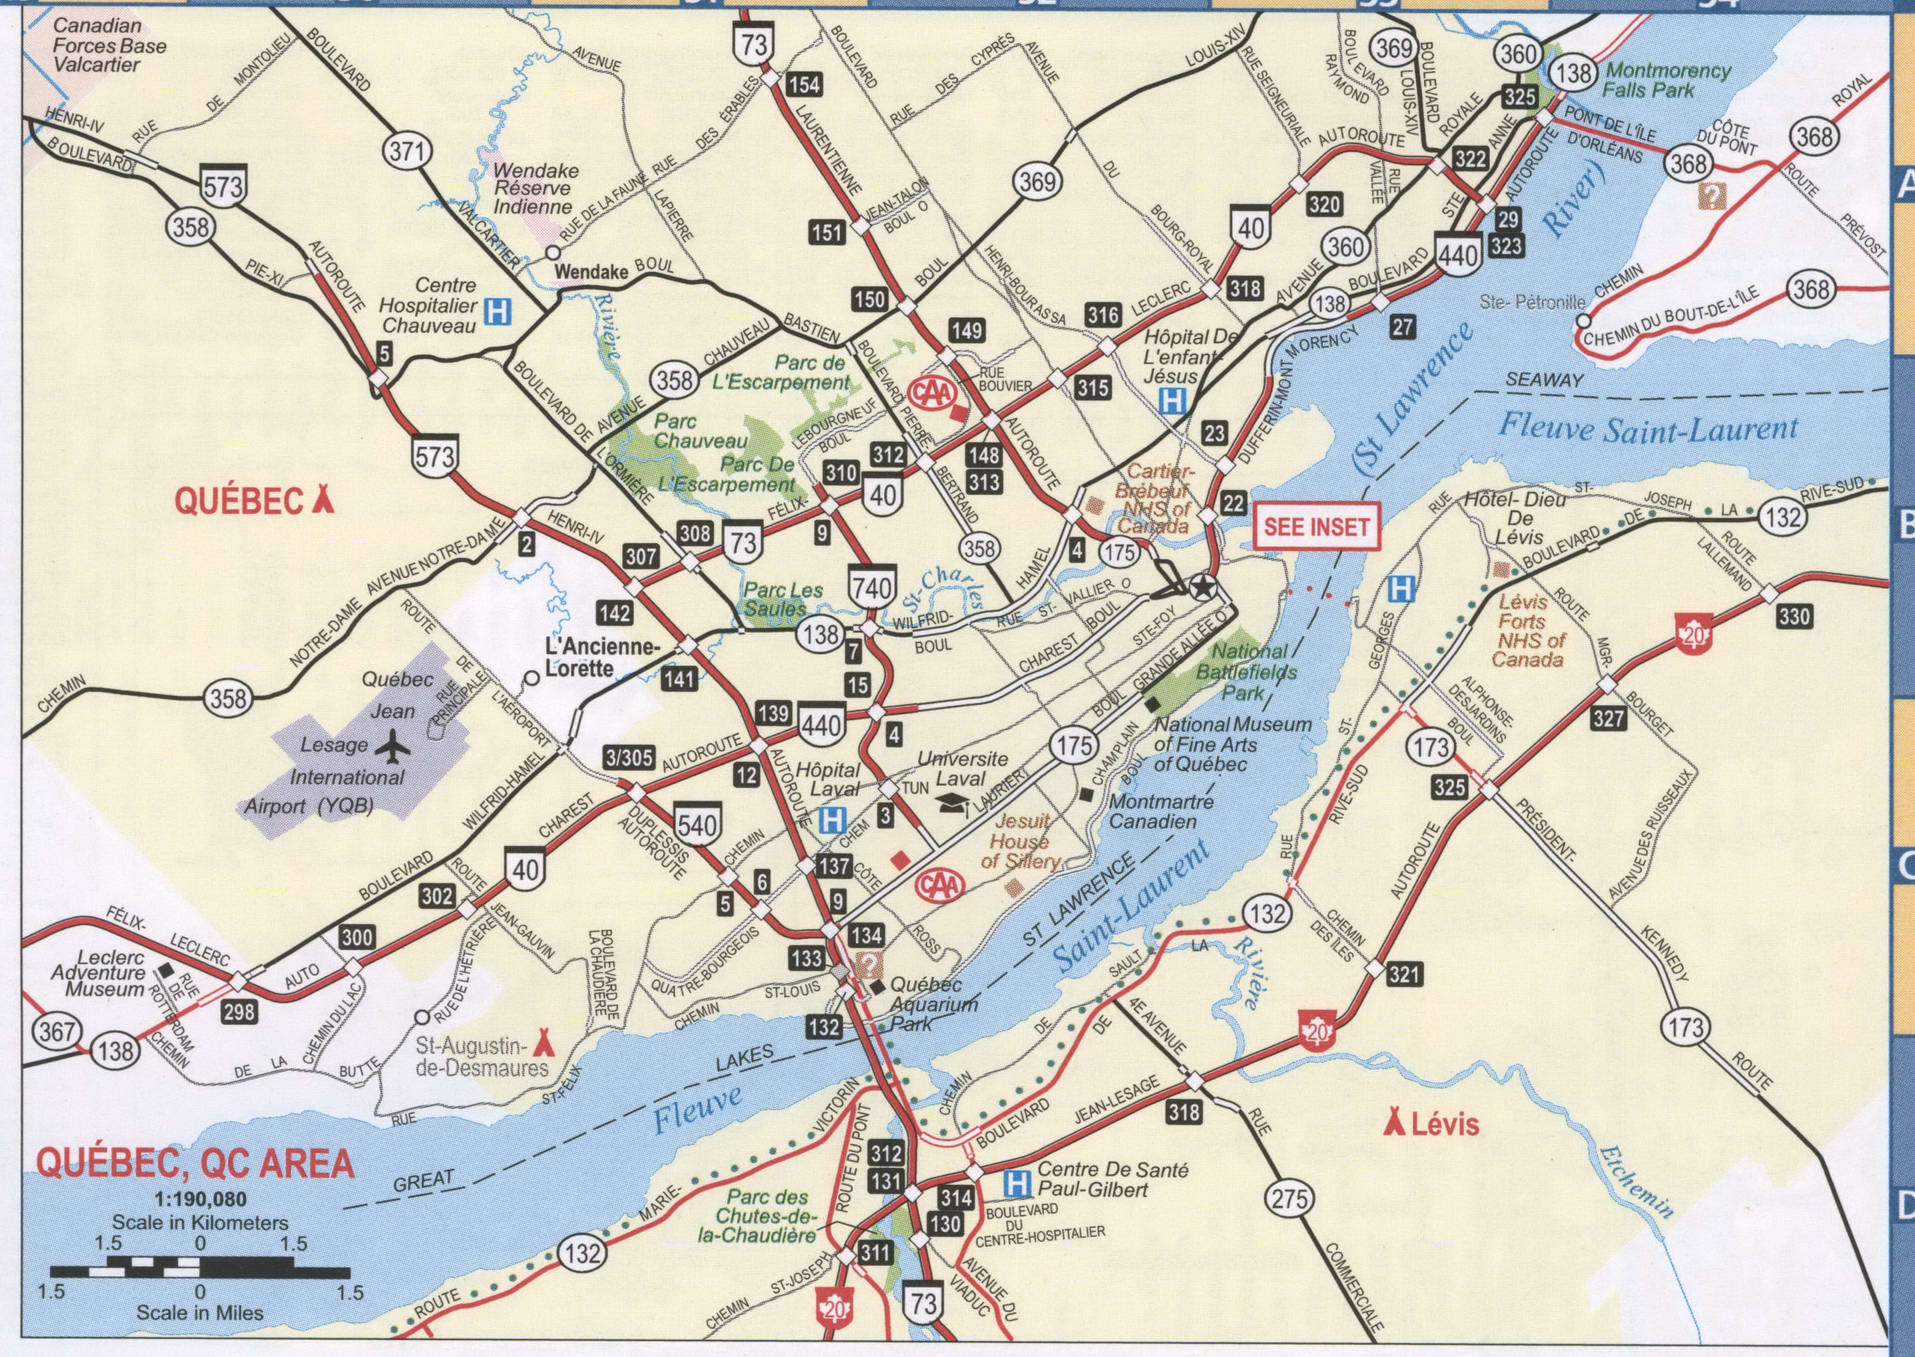 Quebec QC area map